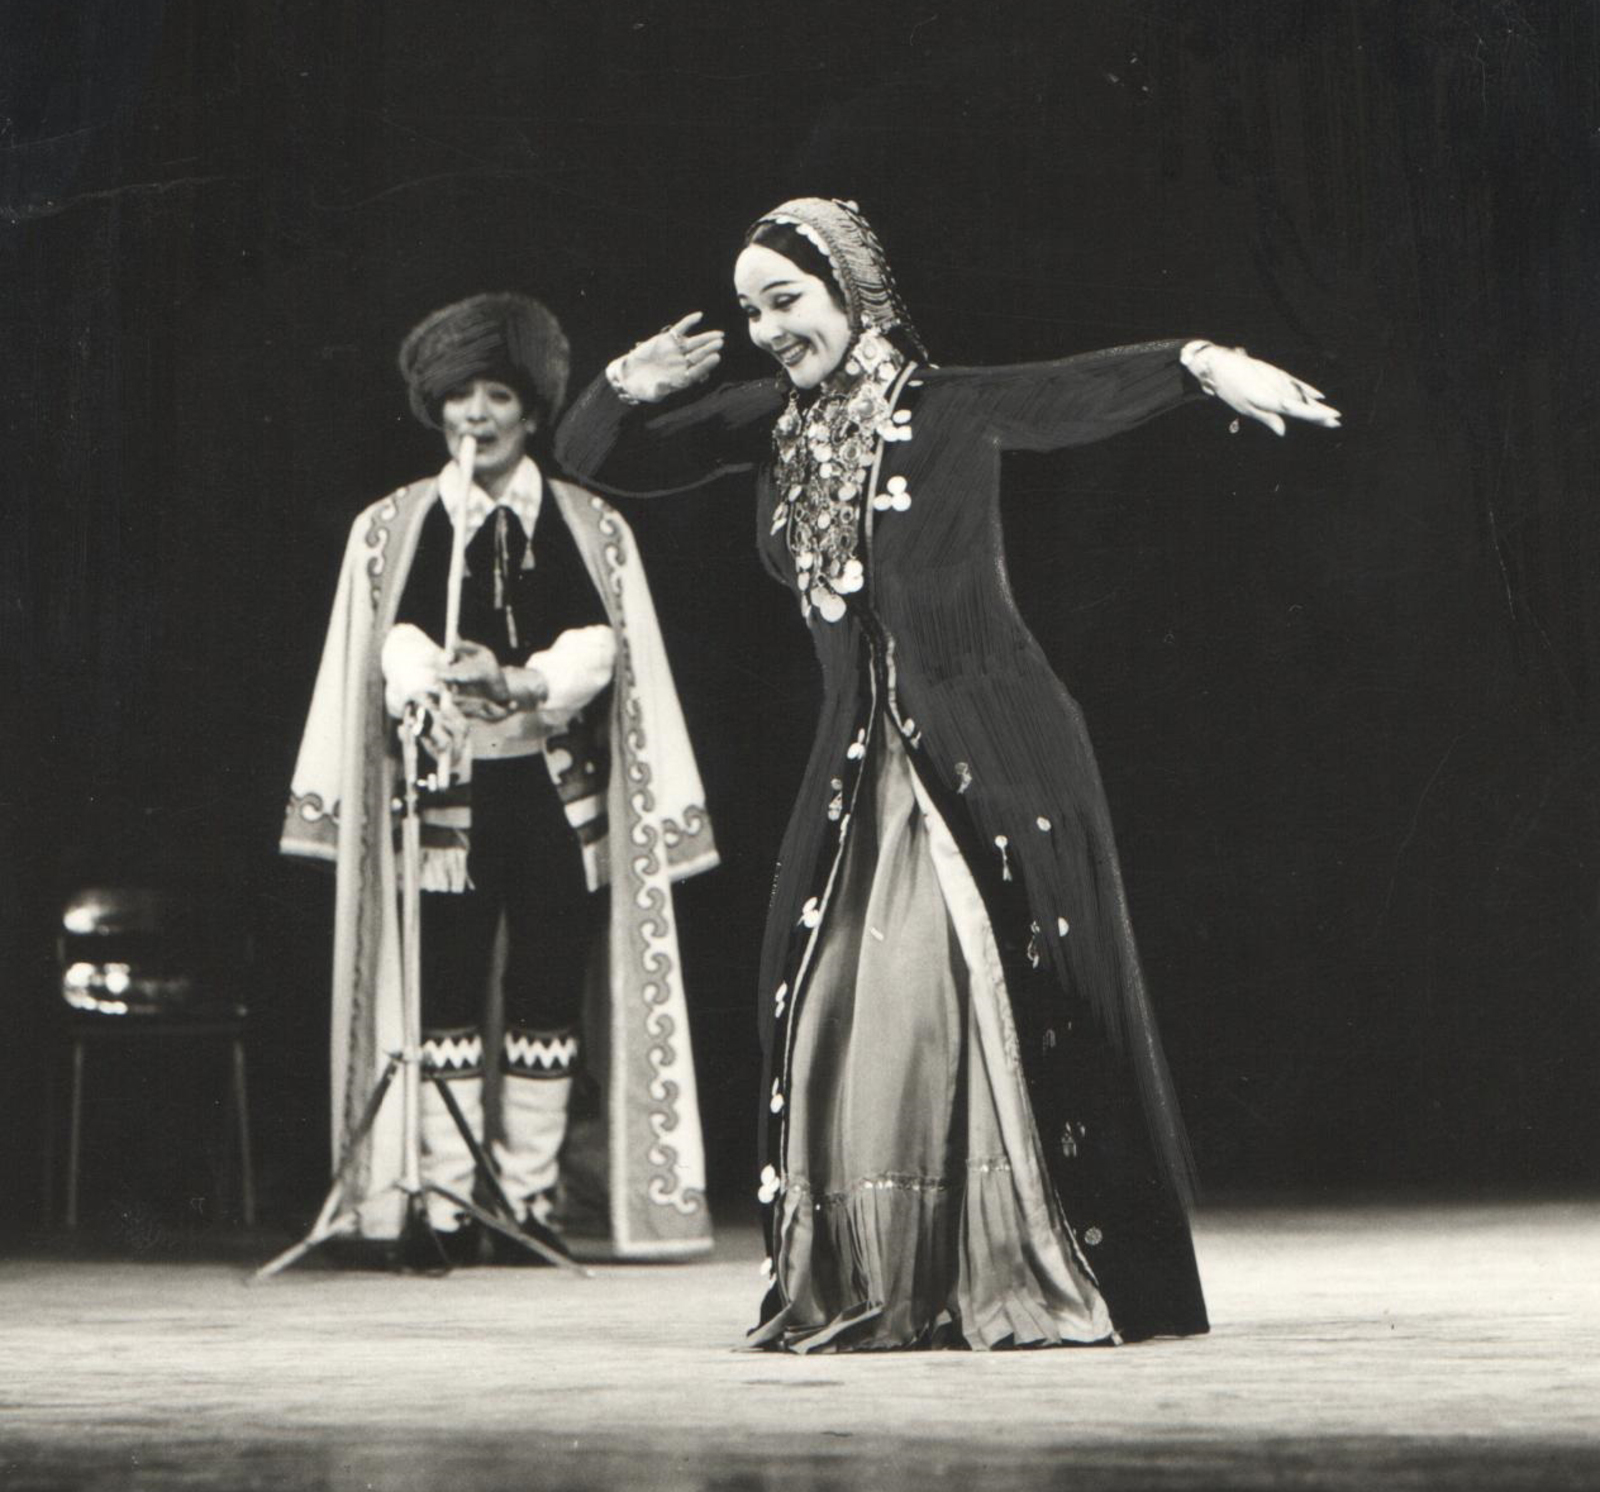 Ишмулла Дилмөхәмәтов & Рәшиҙә Туйсина дуэты. "Заһиҙә" бейеүе. 1980 йыл.